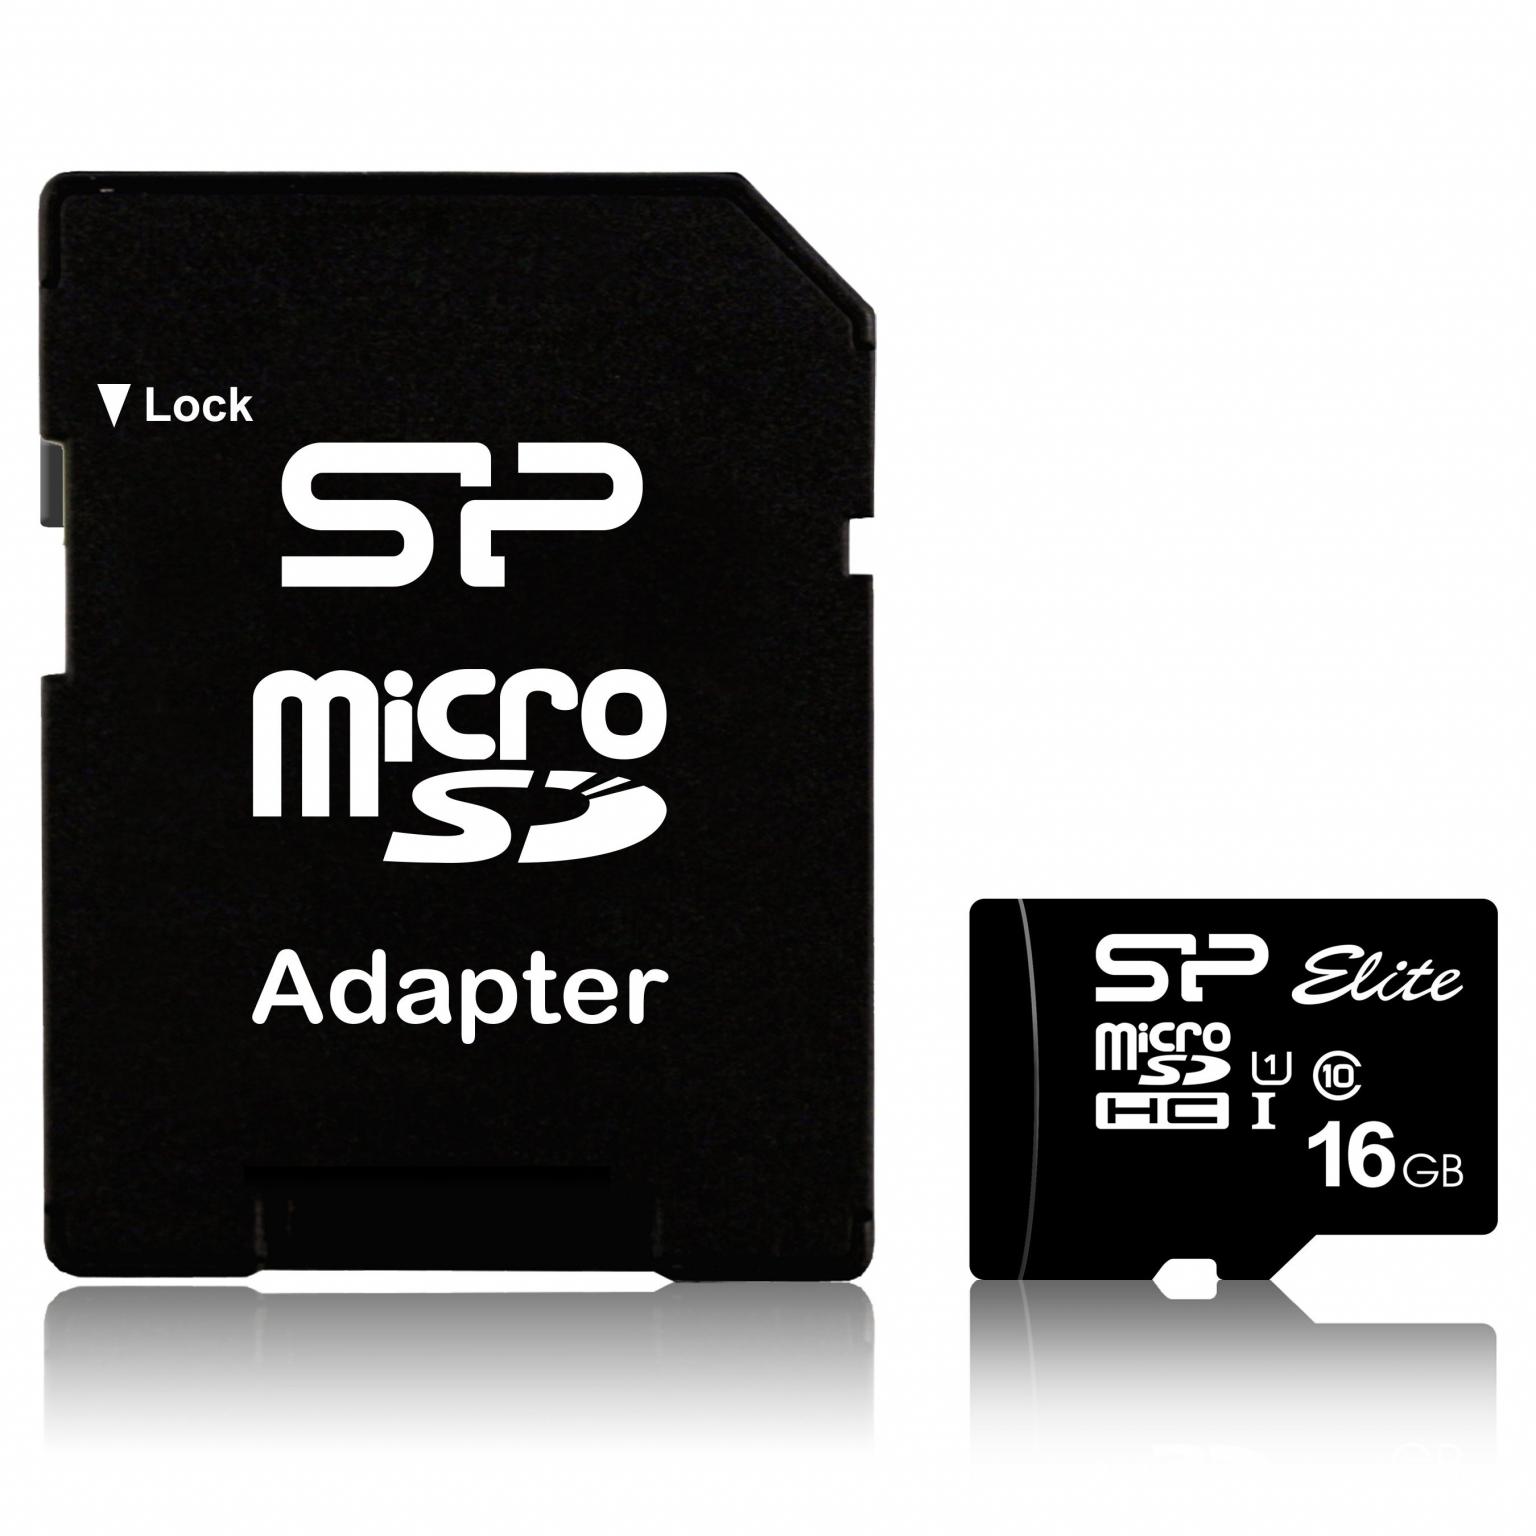 Beweren Poort Verblinding Micro SDHC geheugenkaart - 16 GB - Micro SDHC geheugenkaart, Leessnelheid:  85 MB/s, Schrijfsnelheid: 10 MB/s, Opslagcapaciteit: 16 GB.